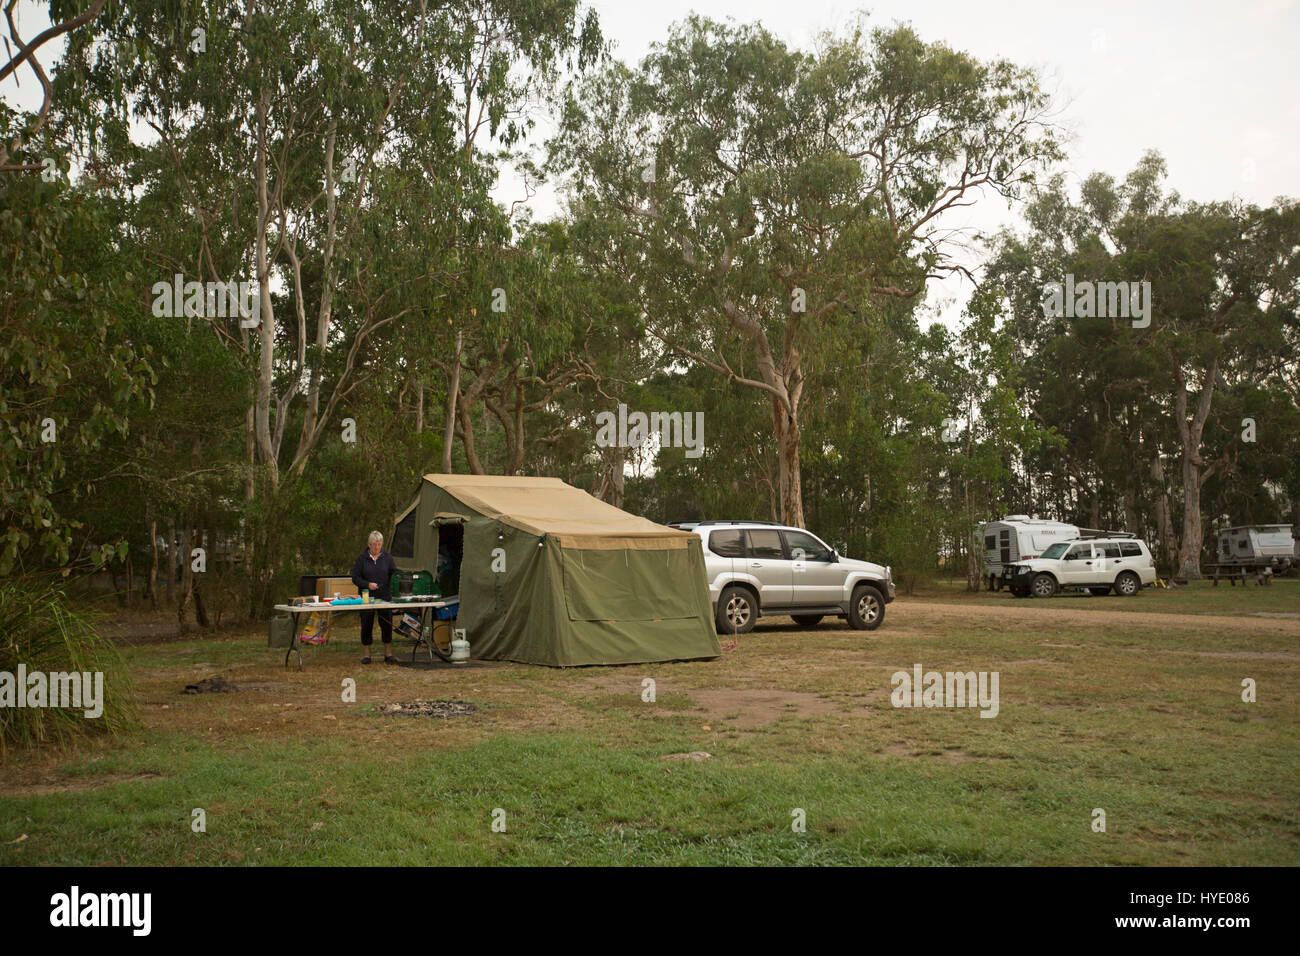 Campertrailer und Allrad Fahrzeuge fahren auf Campingplatz kostenlos Buschland mit Frau arbeitet am Gartentisch in New South Wales Australien Stockfoto